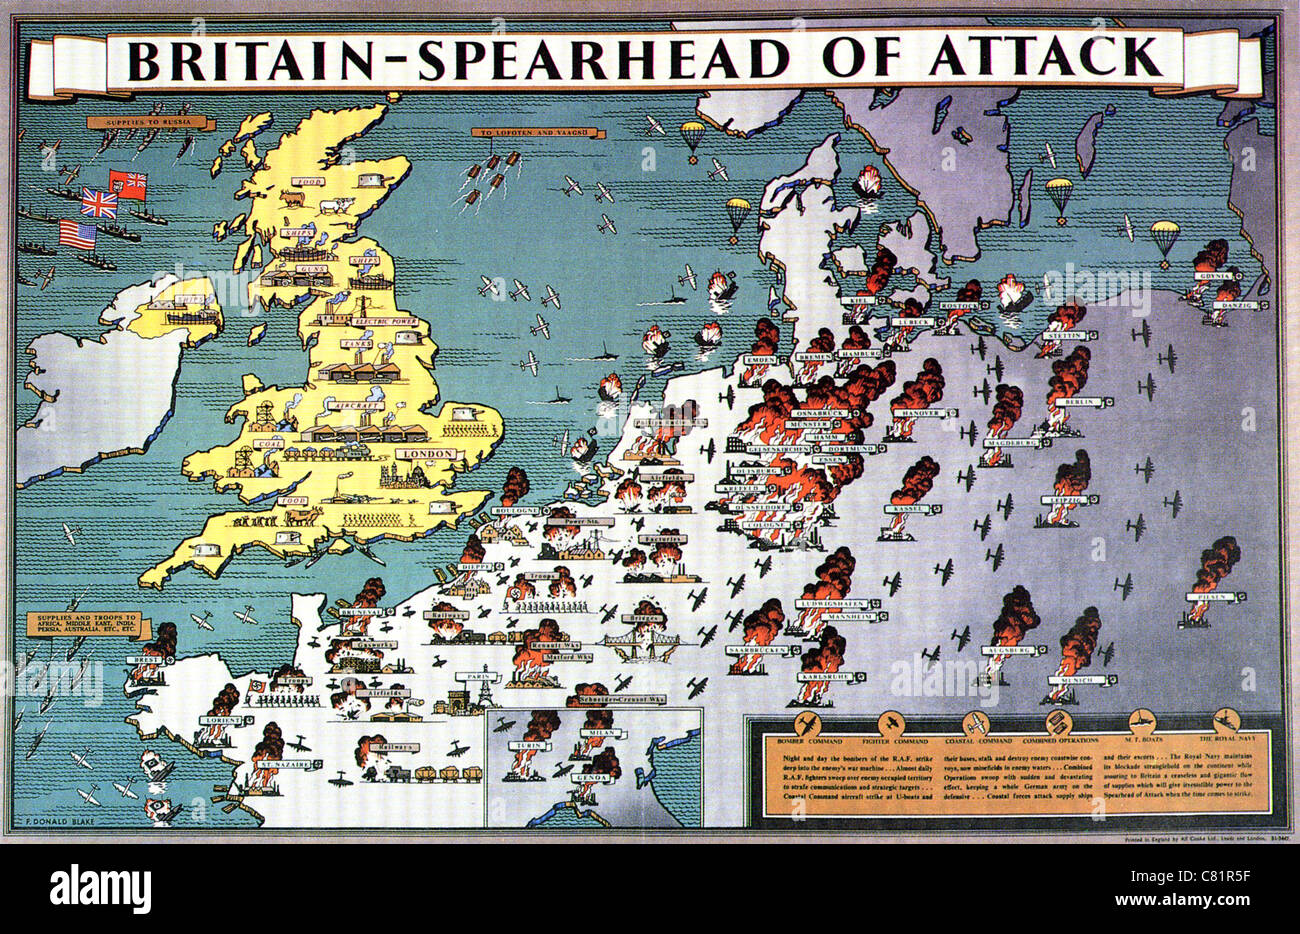 Grande-bretagne - fer de lance de l'attaque - British WW2 présente le Royaume-Uni comme le bastion industriel et plate-forme pour l'attaque sur l'Europe Banque D'Images